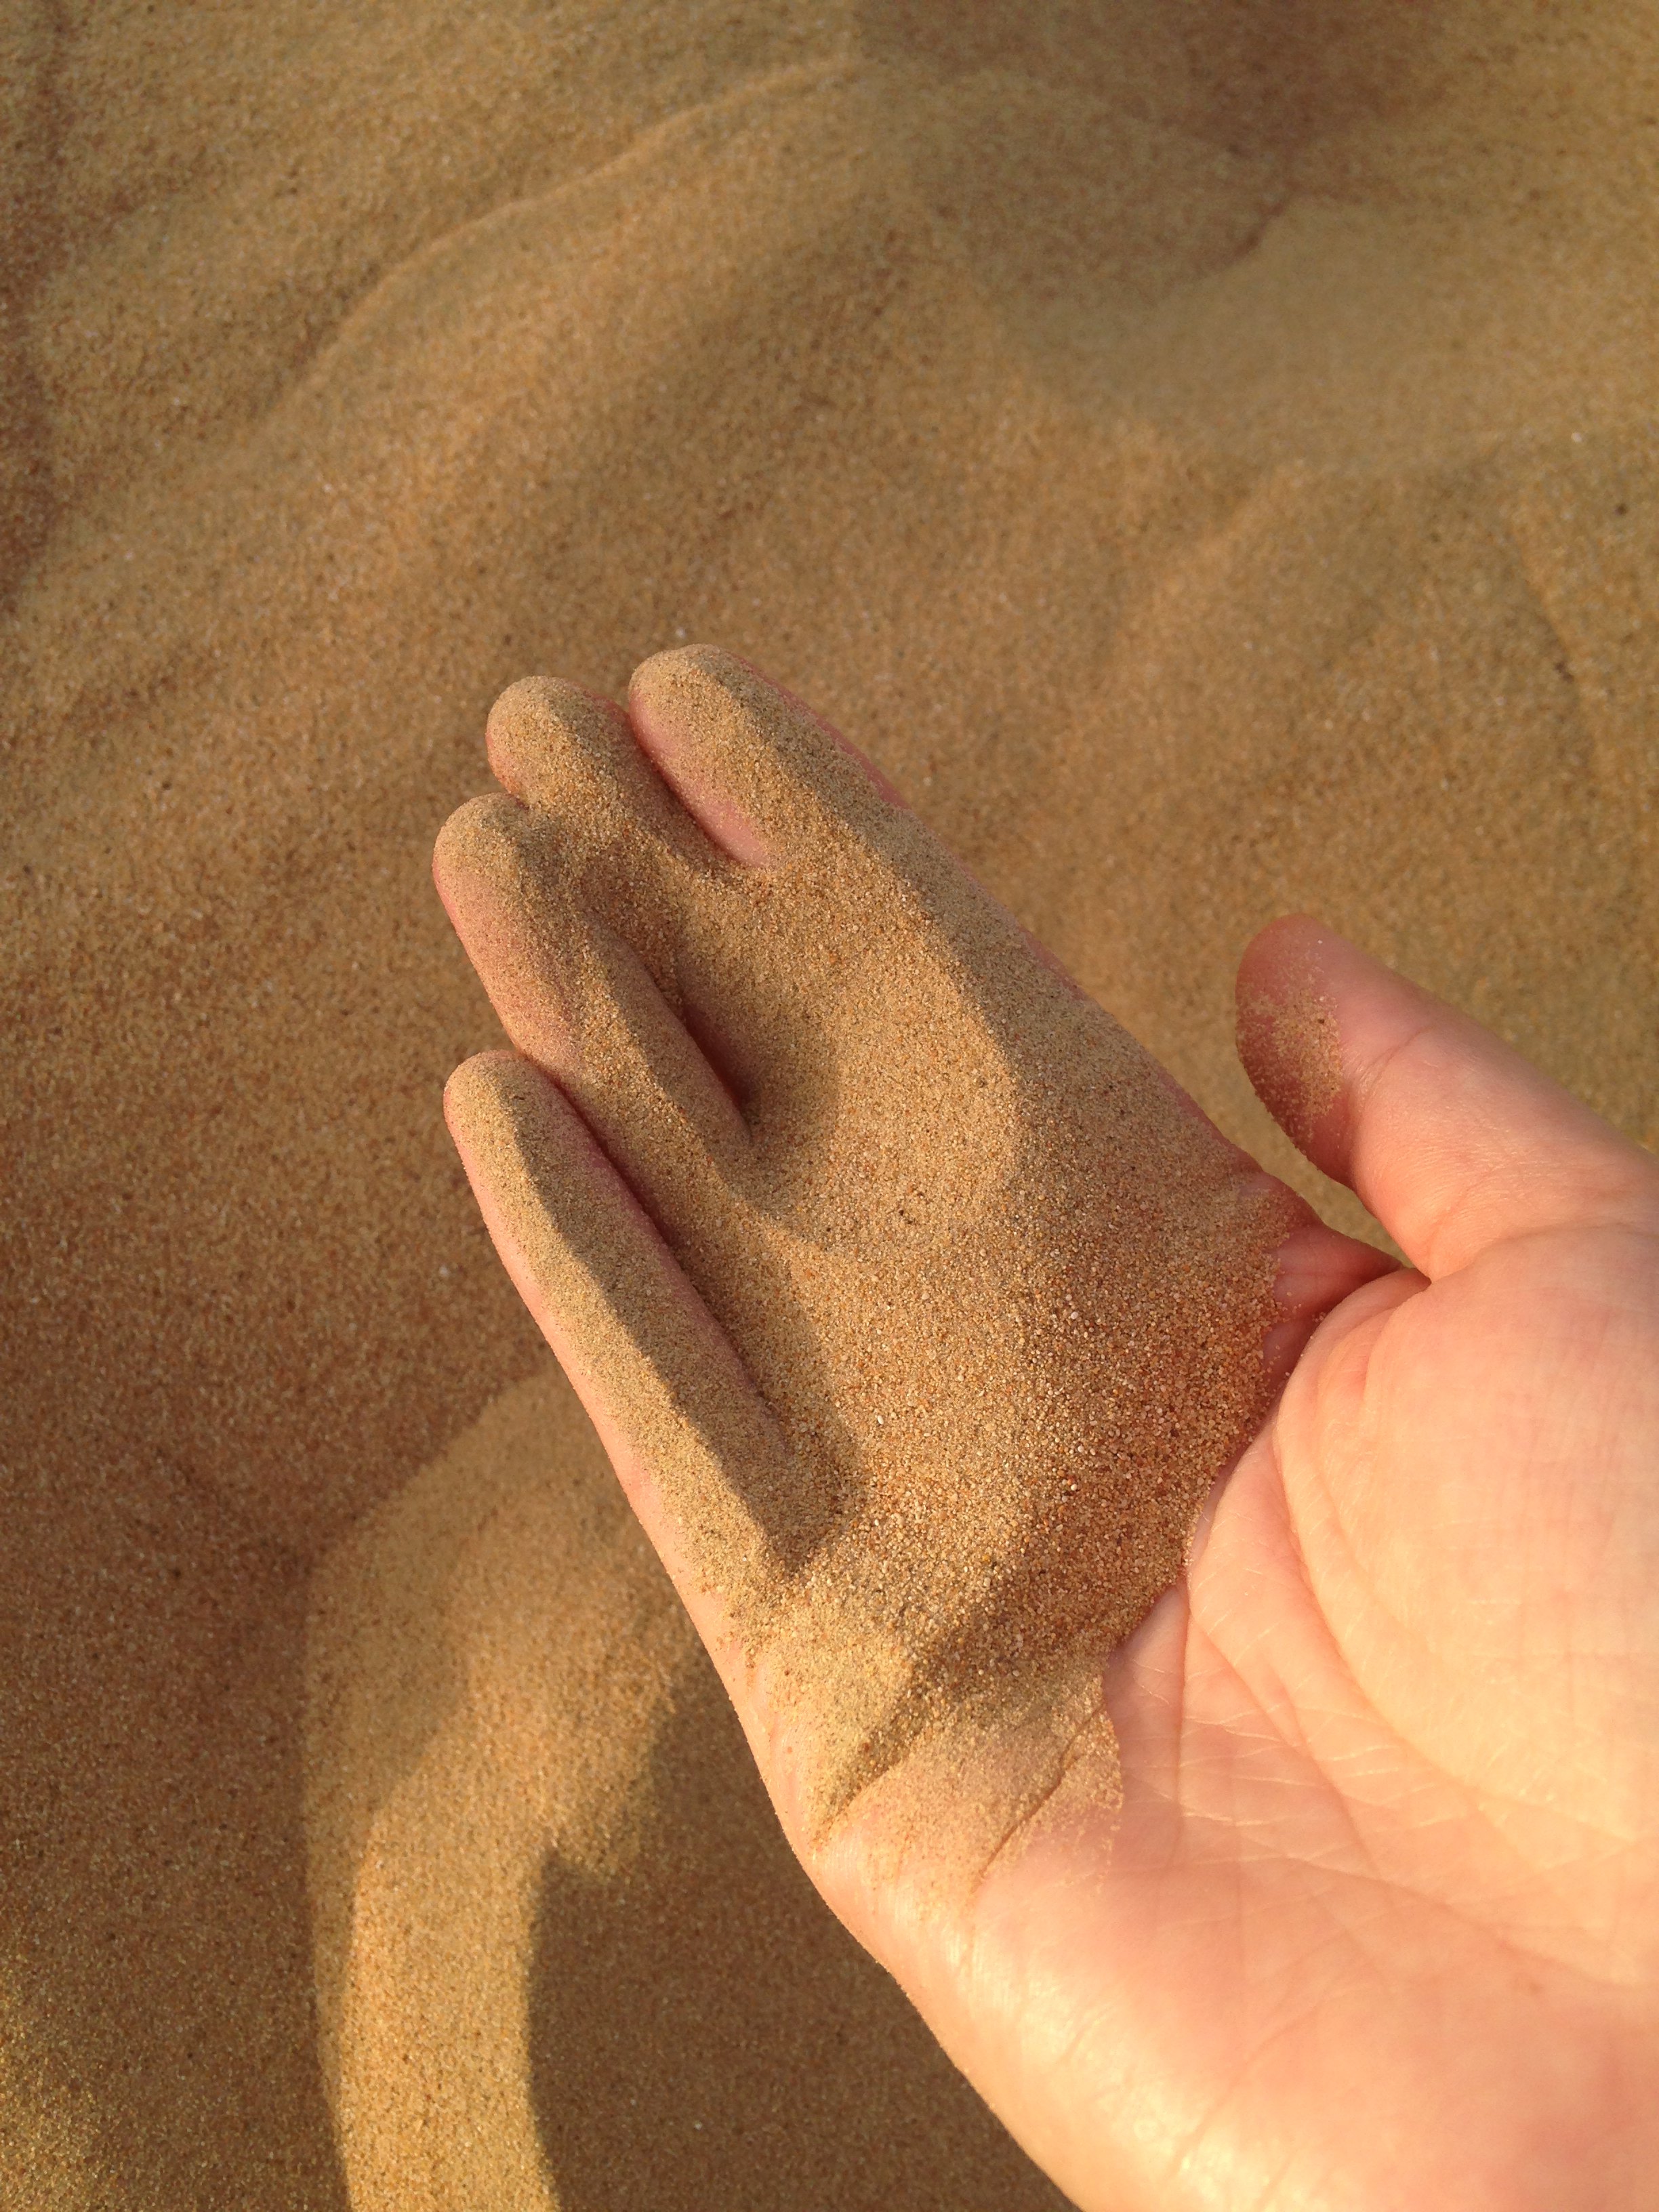           手指中随风流逝的沙子